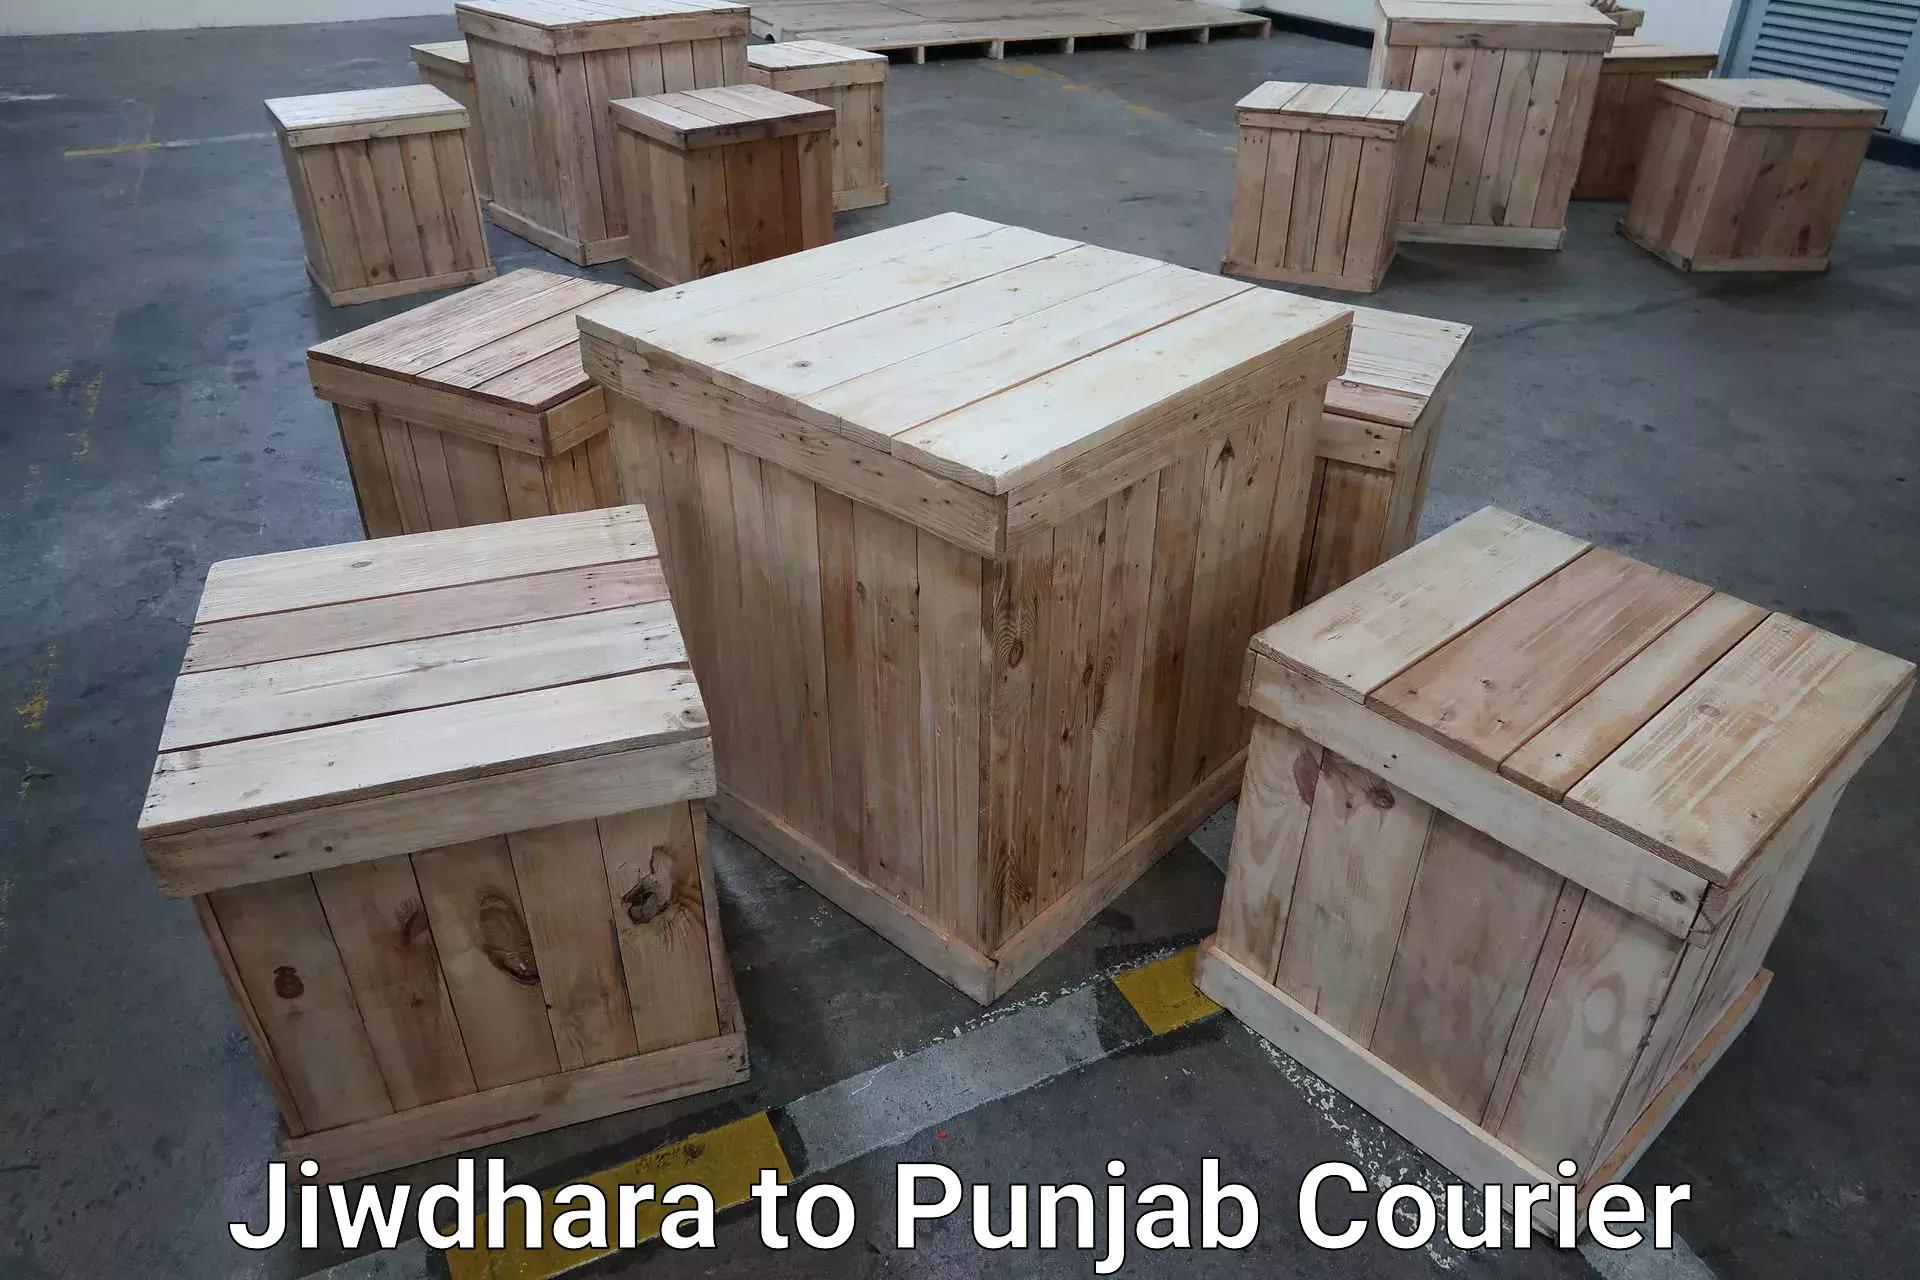 Baggage delivery estimate Jiwdhara to Punjab